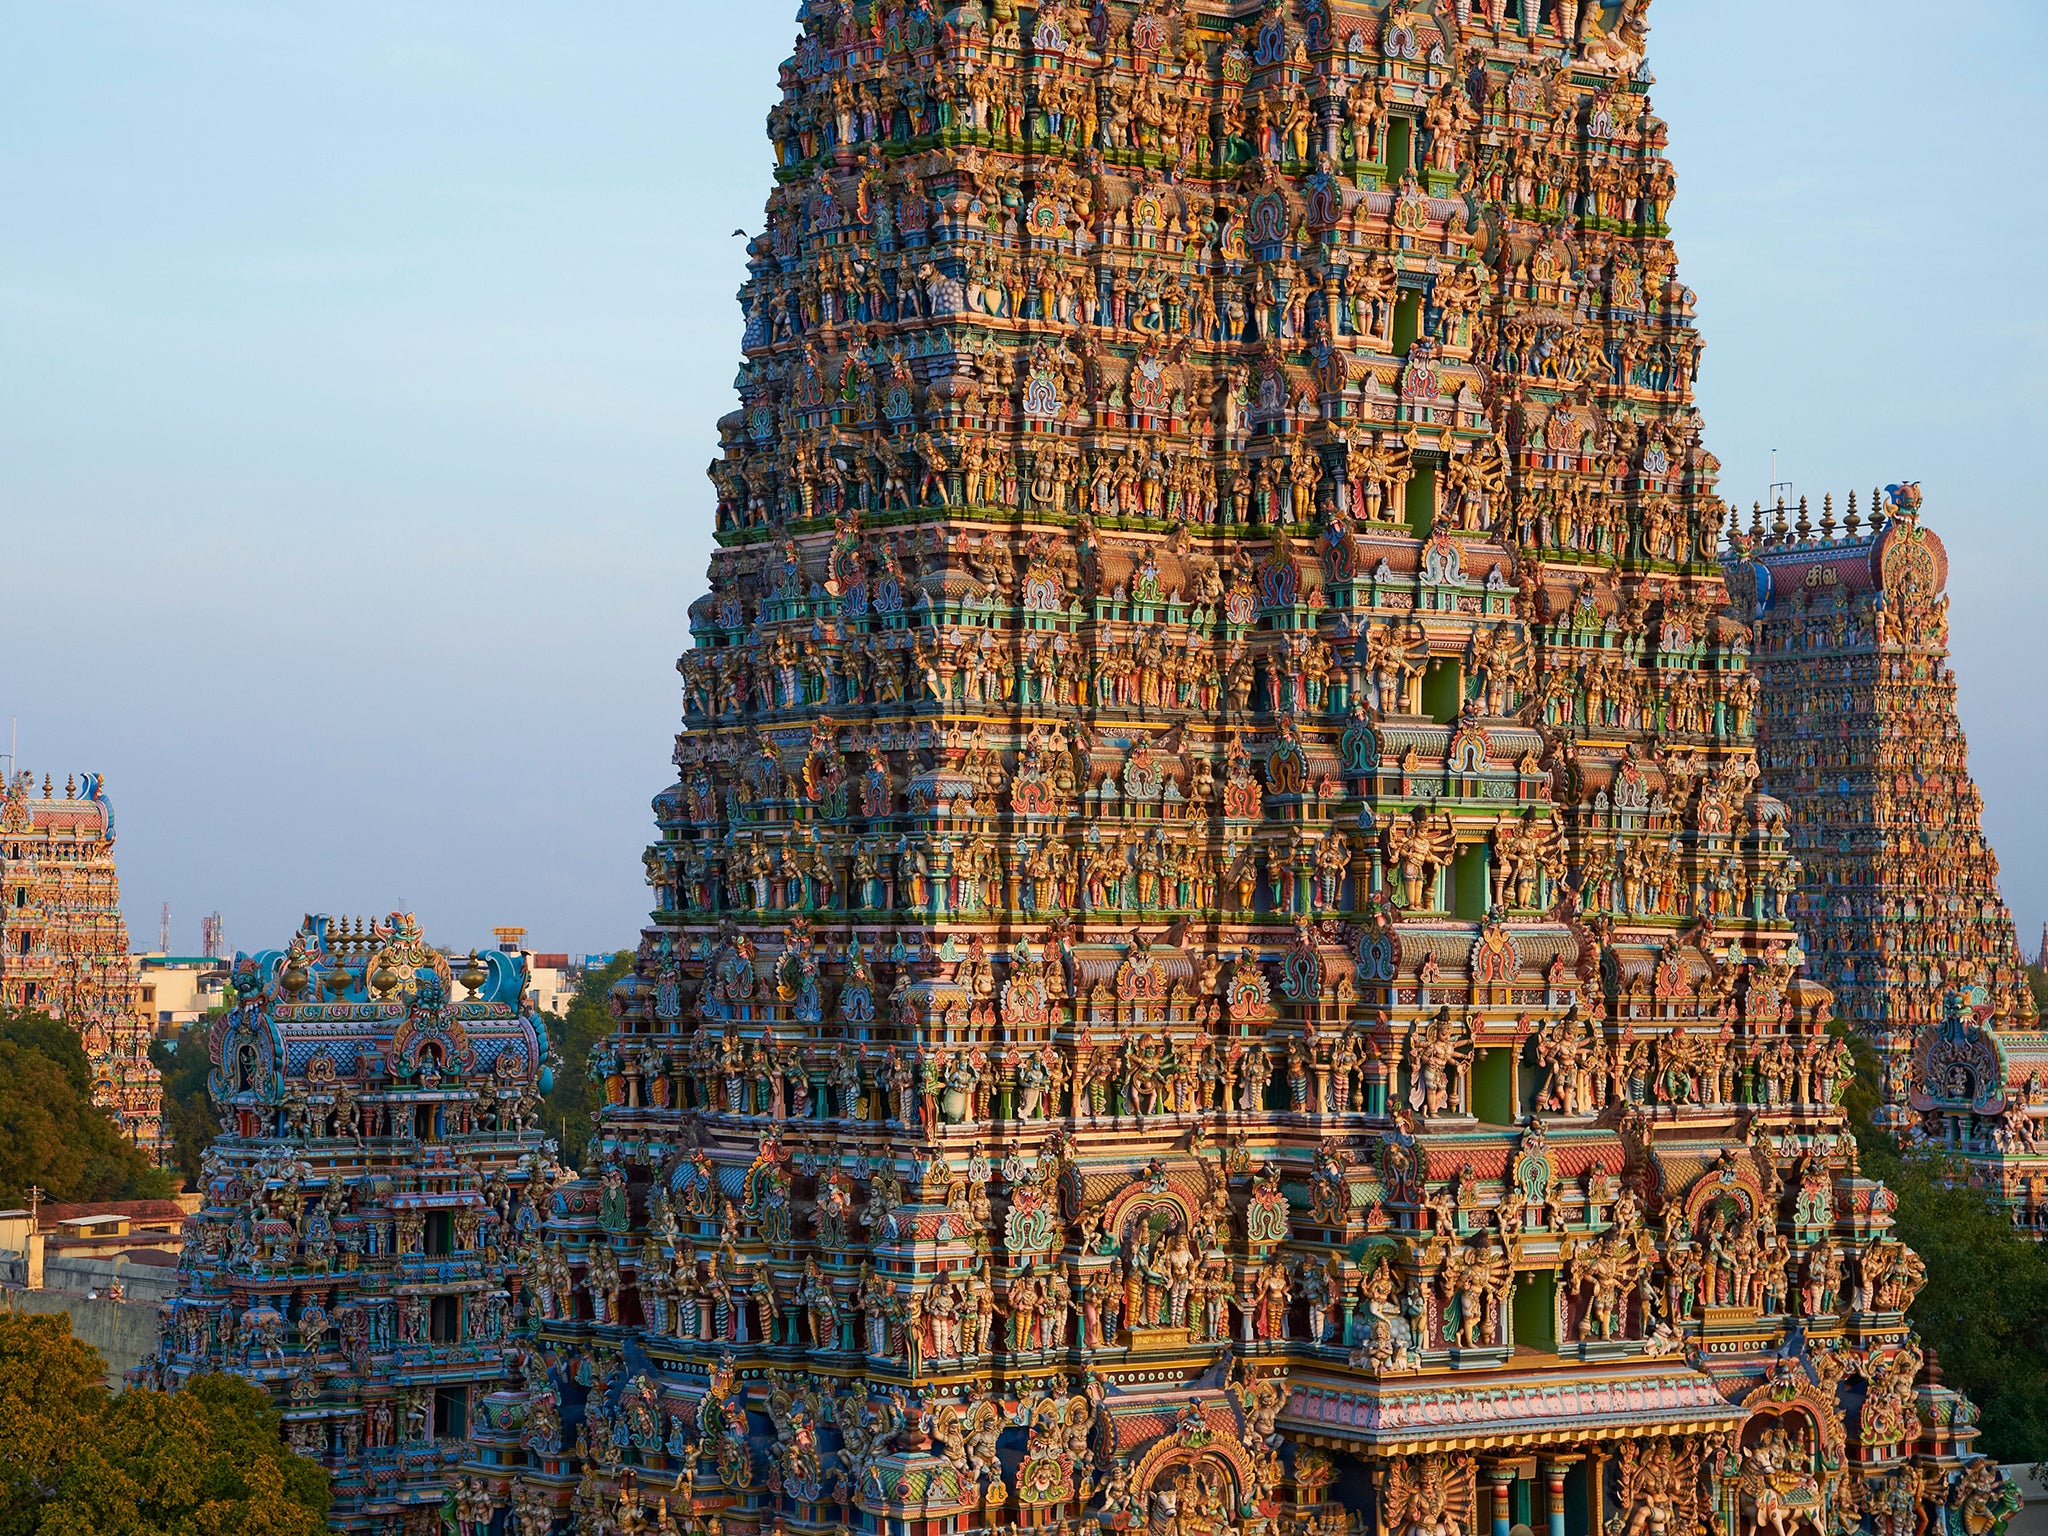 Sri Meenakshi temple, Madurai, Tamil Nadu